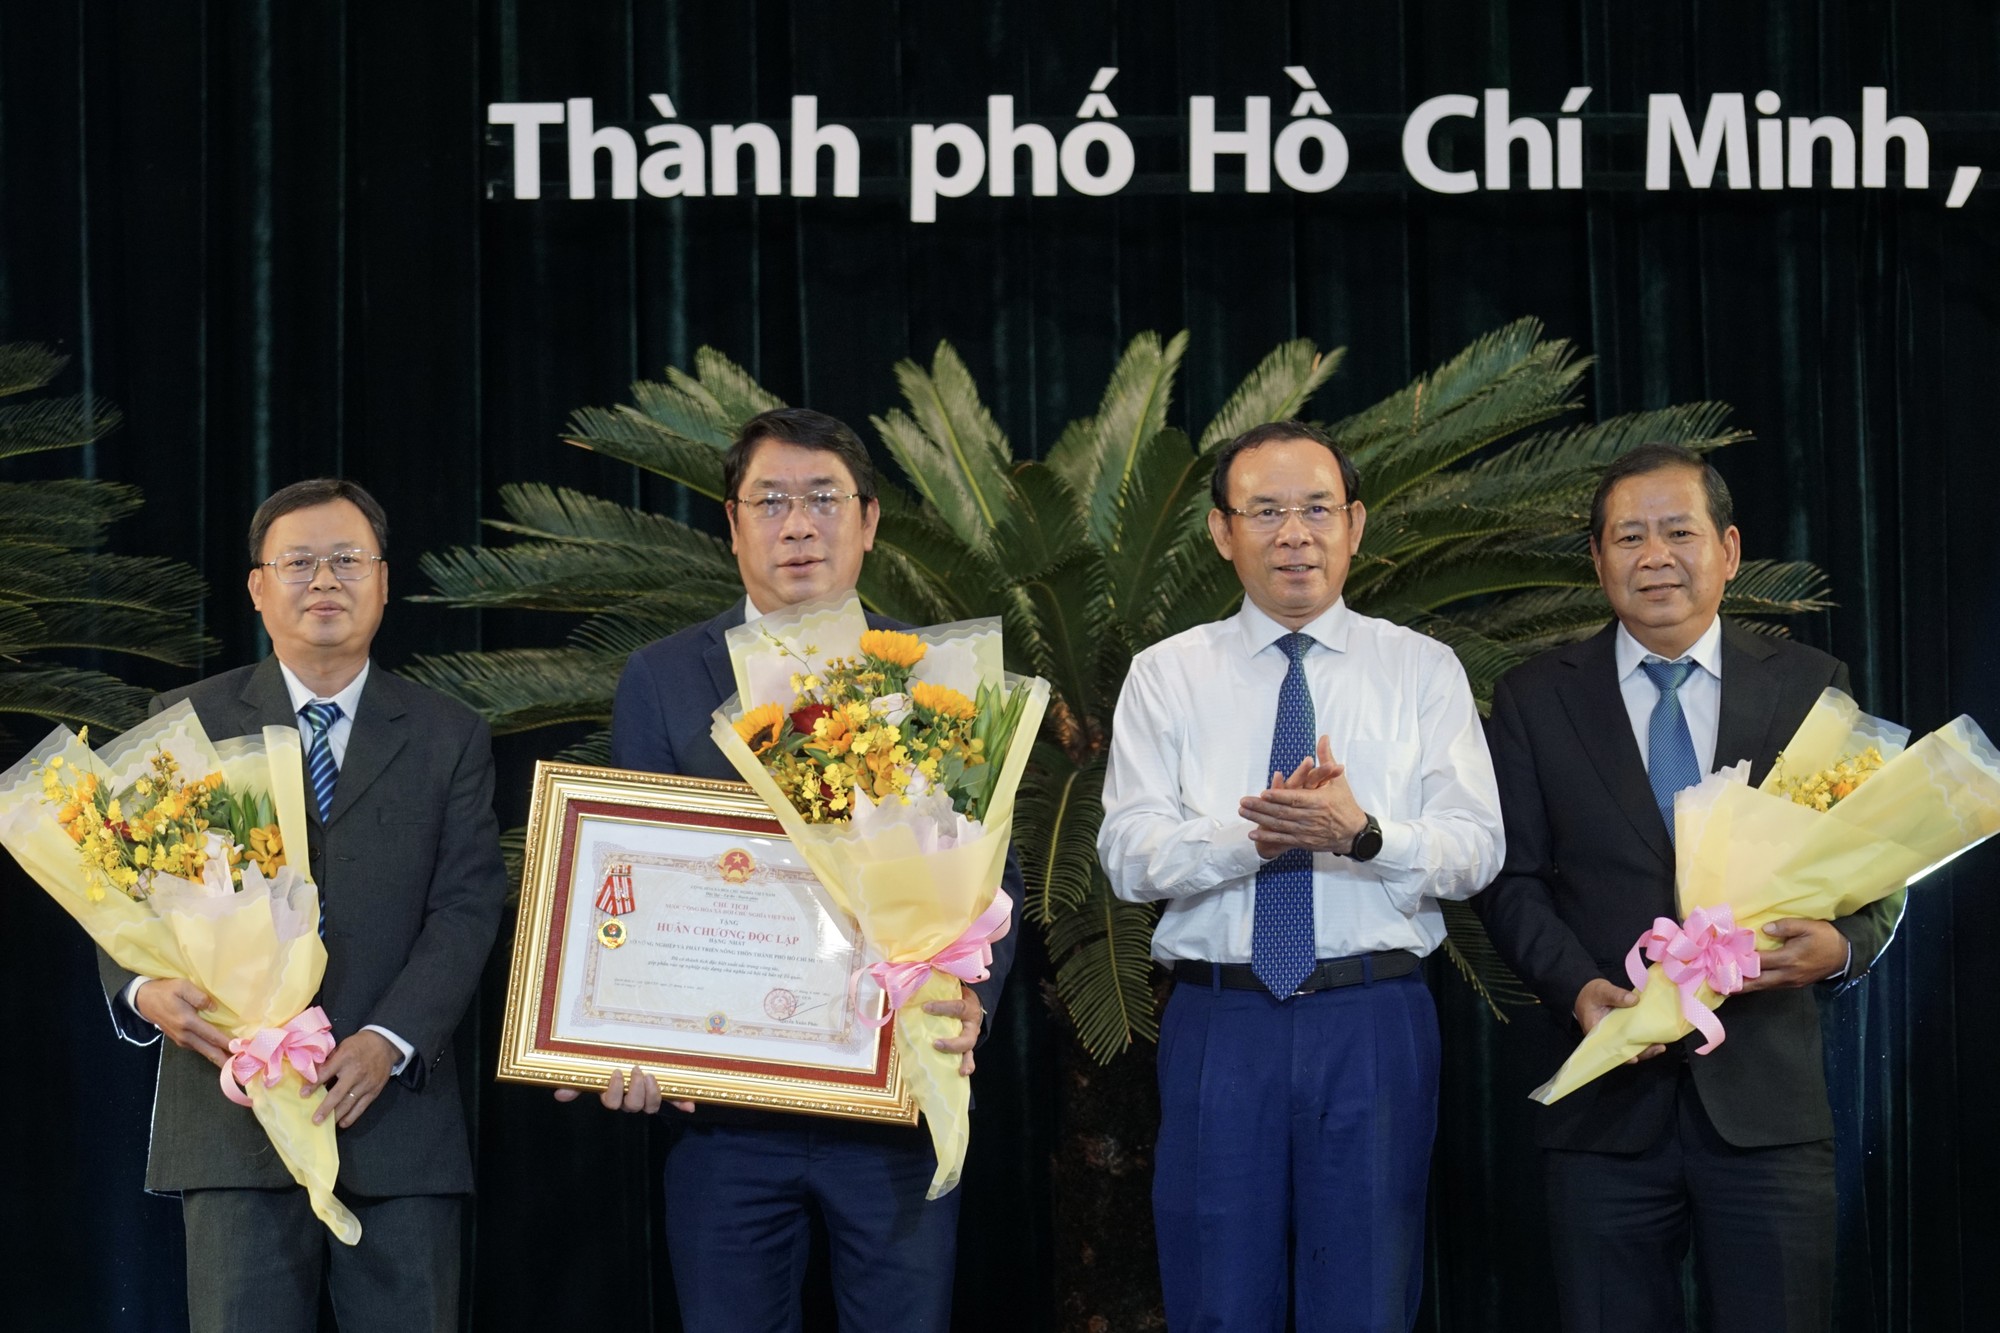 Bí thư Thành ủy Nguyễn Văn Nên trao Huân chương Độc lập hạng Nhất cho Sở Nông nghiệp và Phát triển nông thôn TP. Hồ Chí Minh (Ảnh: Hoàng Hùng).